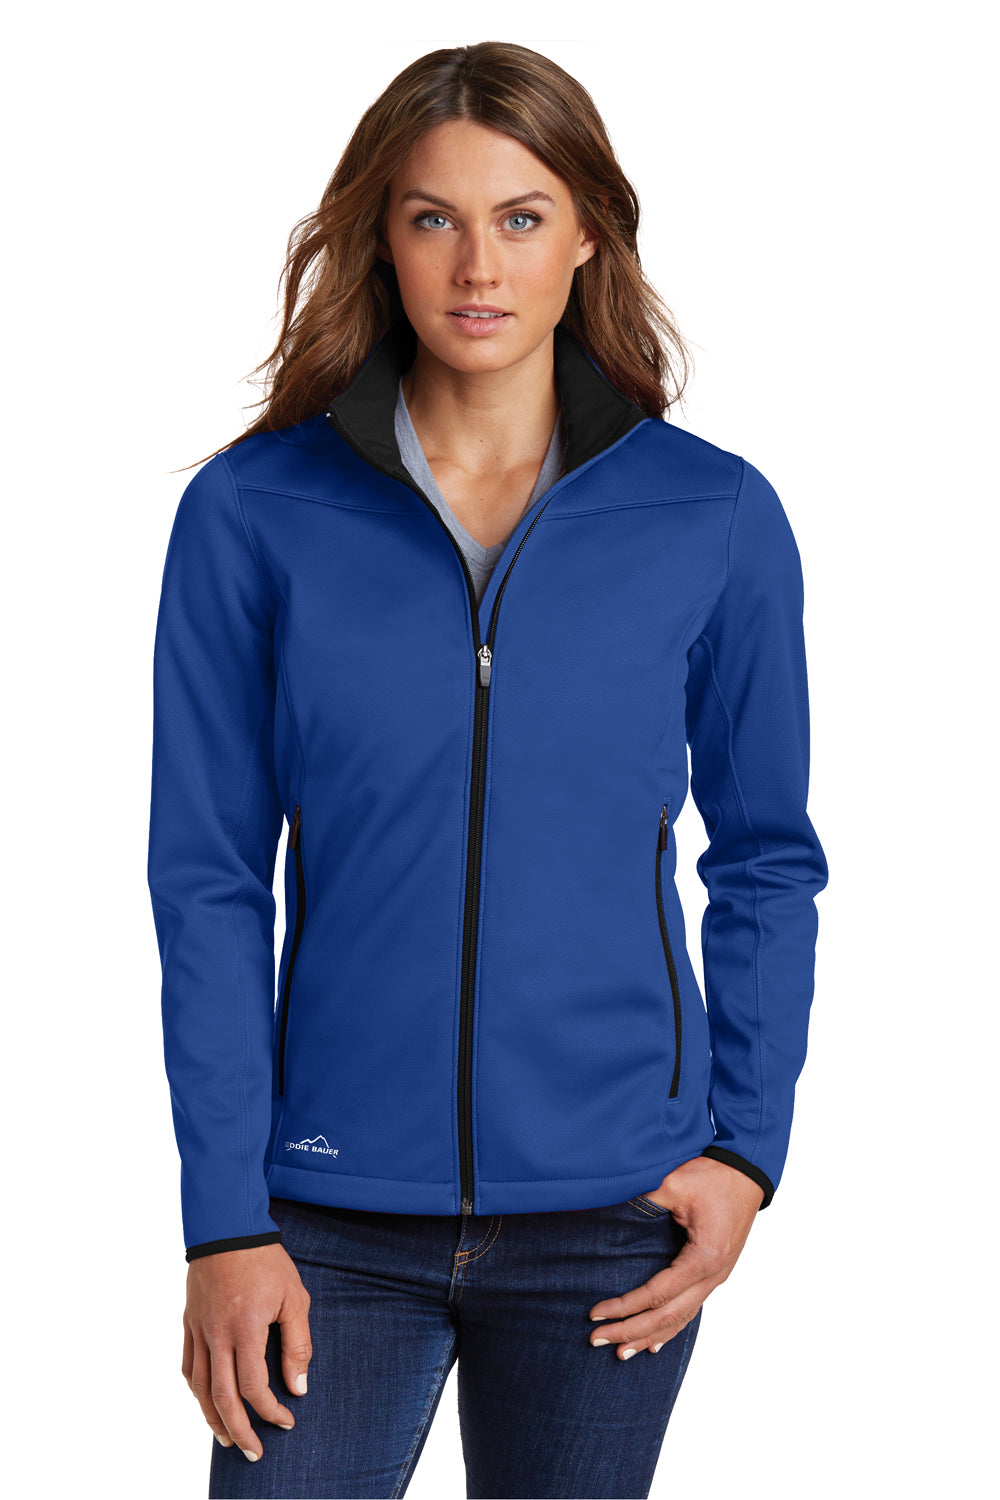 Eddie Bauer EB539 Womens Waterproof Full Zip Jacket Cobalt Blue Model Front